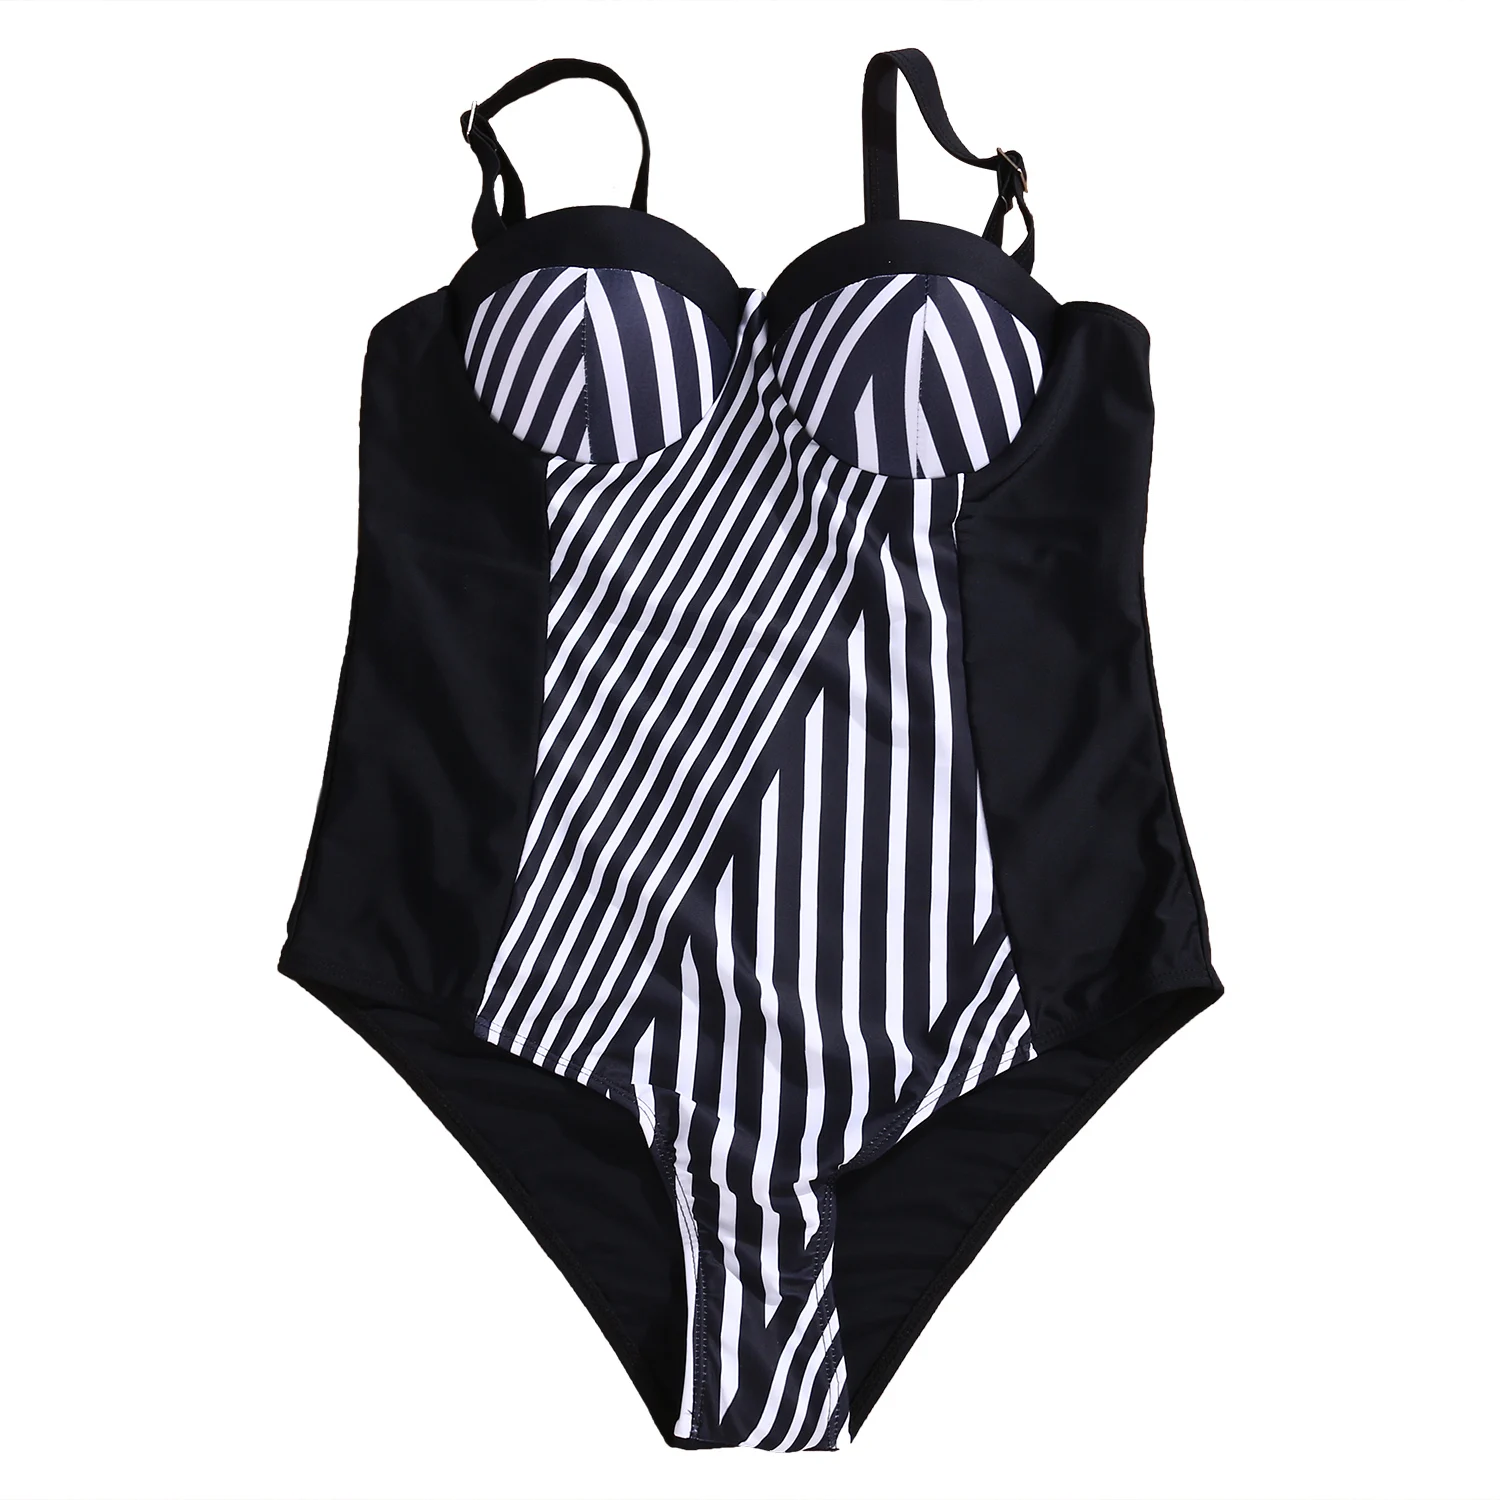 Women Plus Size Push Up Padded Monokini One Piece Bikini Swimsuit Swimwear High Waist Striped Bathing Suit Beachwear XL XXL XXXL | Спорт и